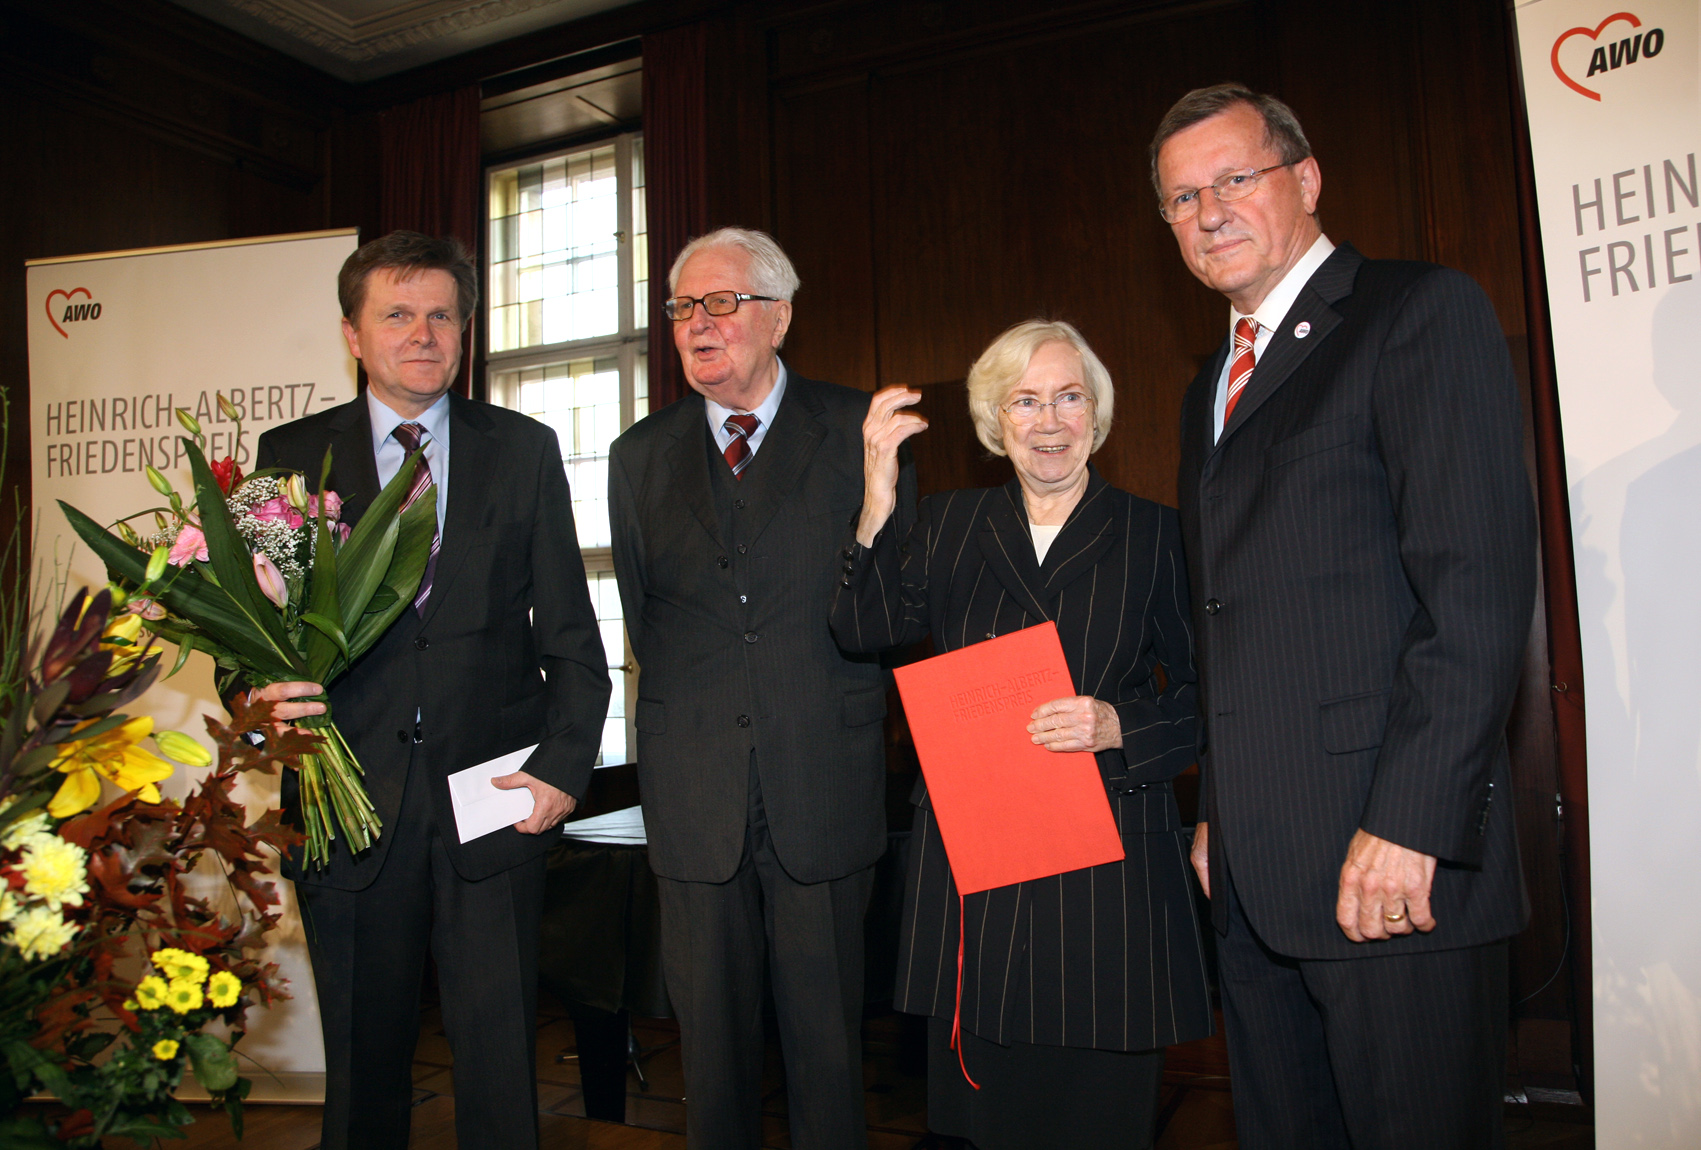 Dr. Hans Jochen-Vogel bei der Verleihung des Heinrich-Albertz-Friedenspreises, zusammen mit Wolfgang Stadler und Wilhelm Schmidt.